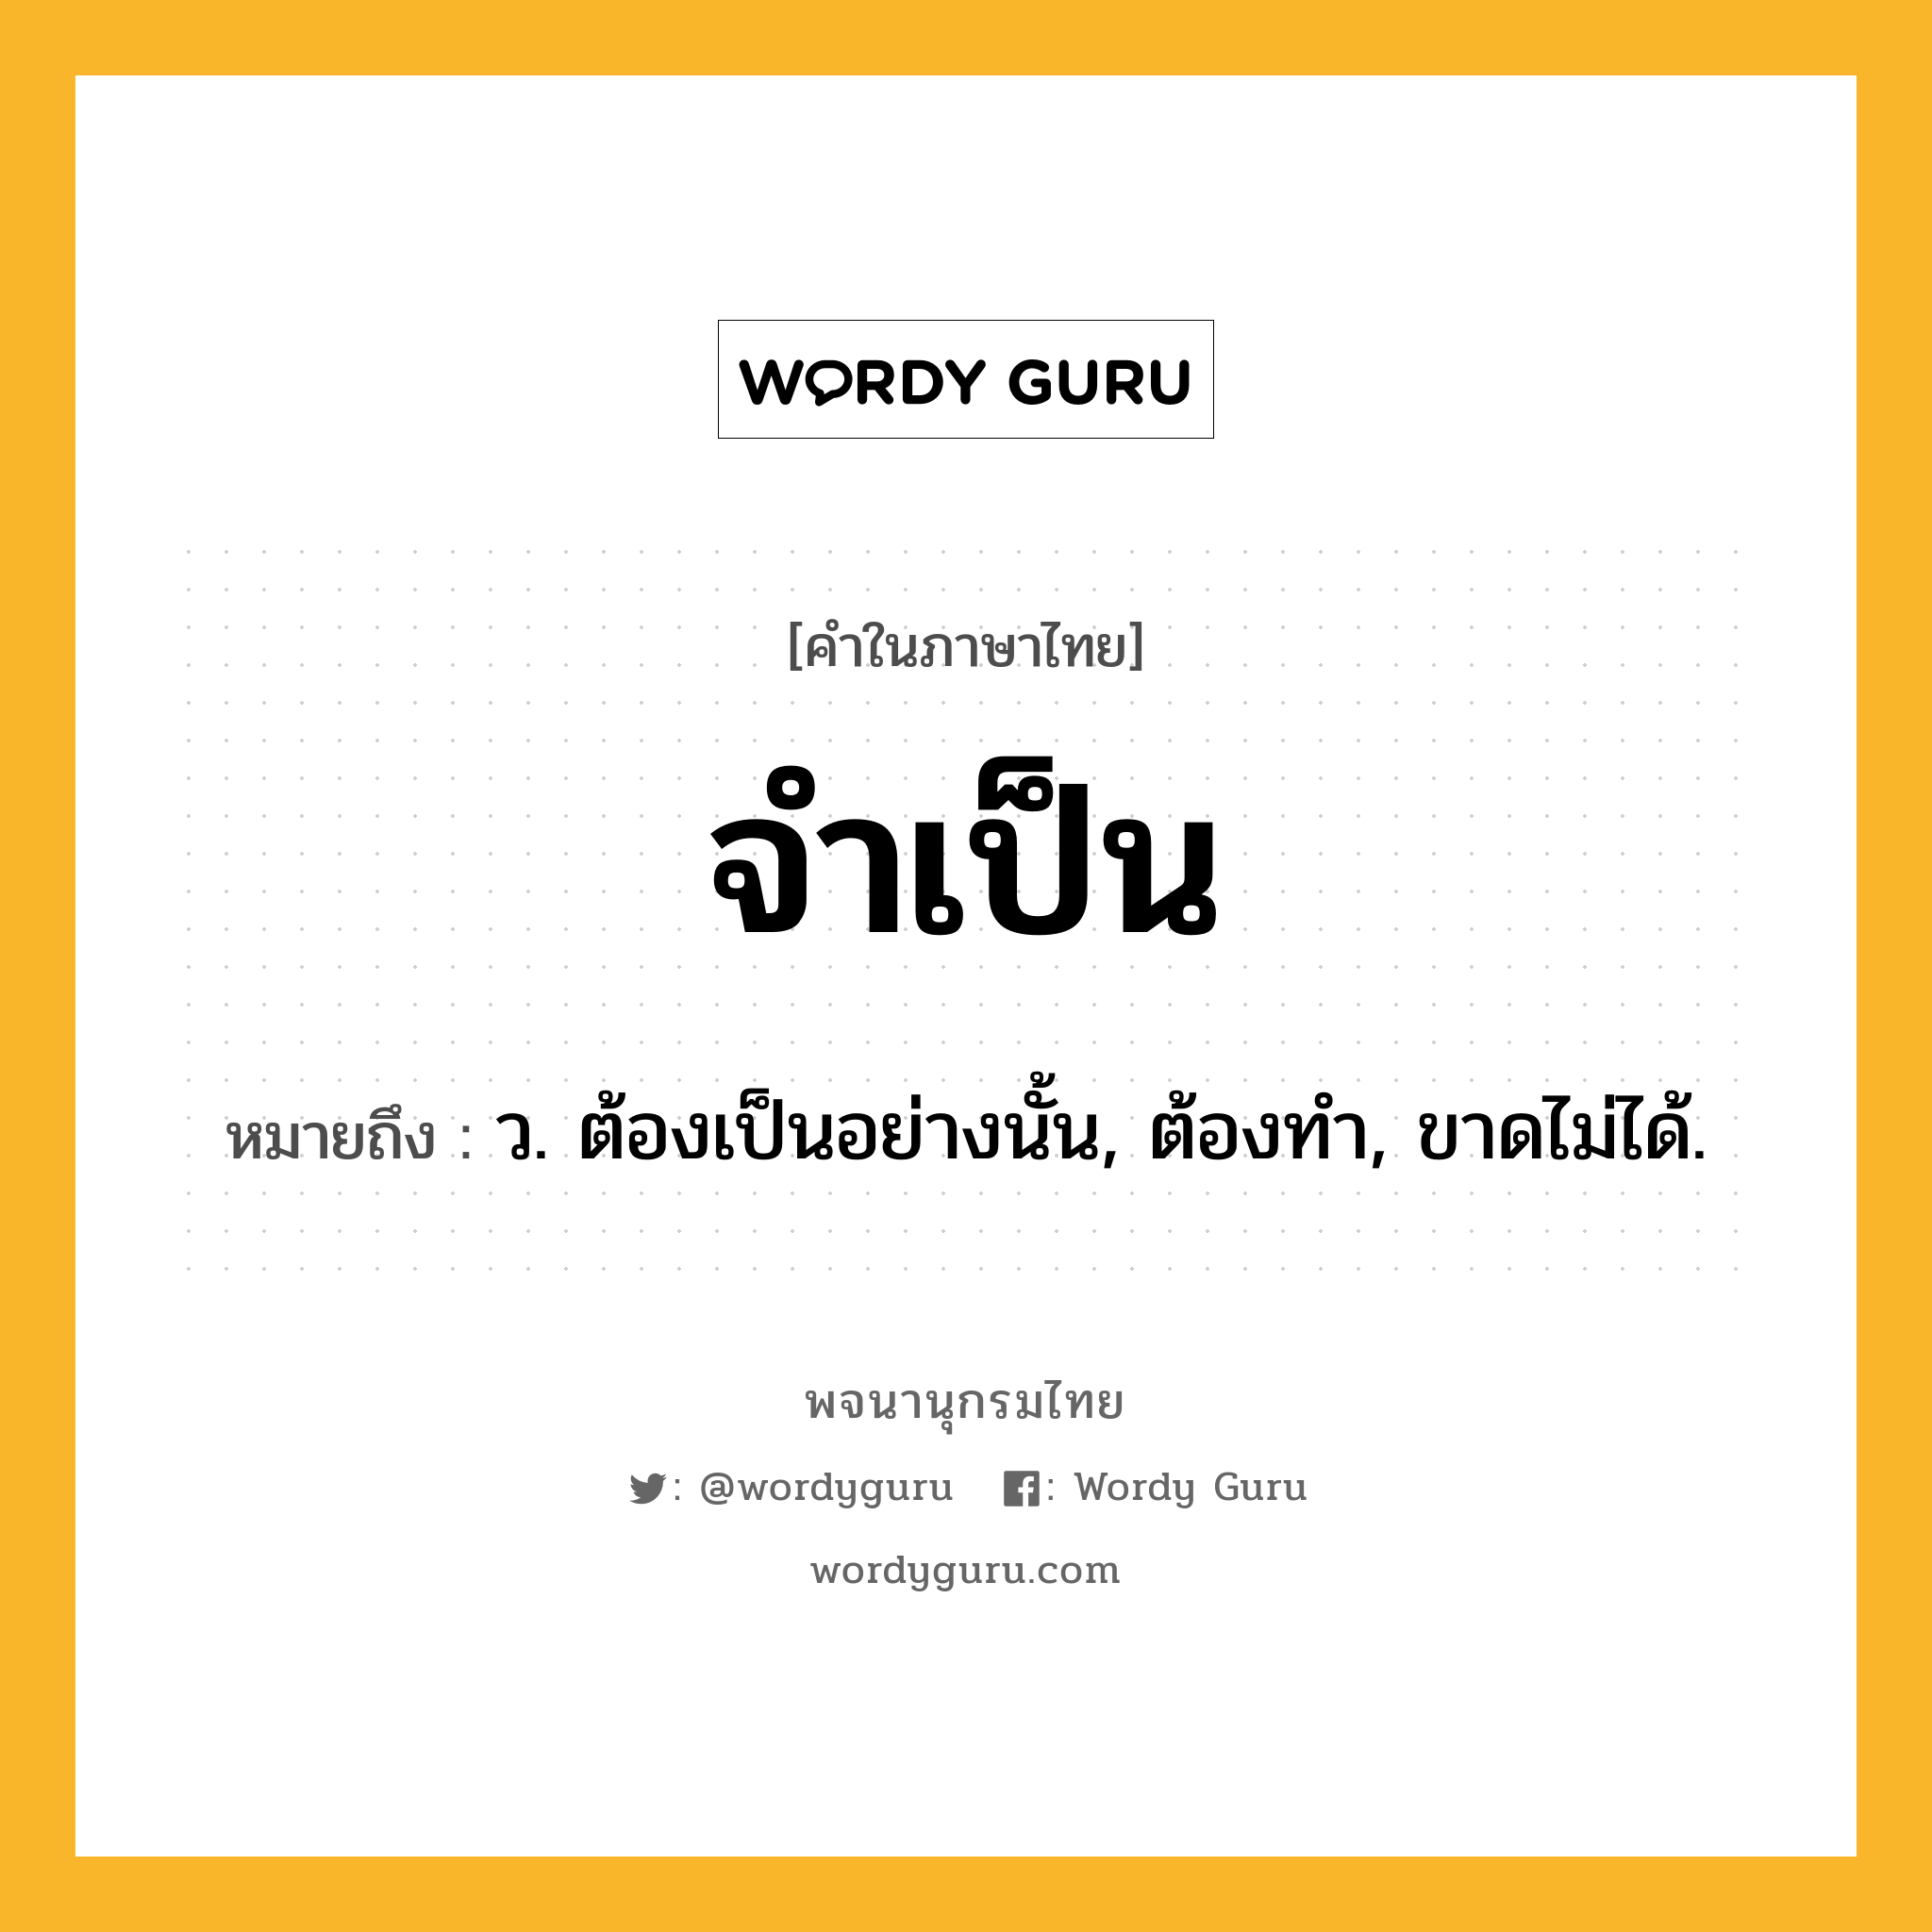 จำเป็น ความหมาย หมายถึงอะไร?, คำในภาษาไทย จำเป็น หมายถึง ว. ต้องเป็นอย่างนั้น, ต้องทํา, ขาดไม่ได้.